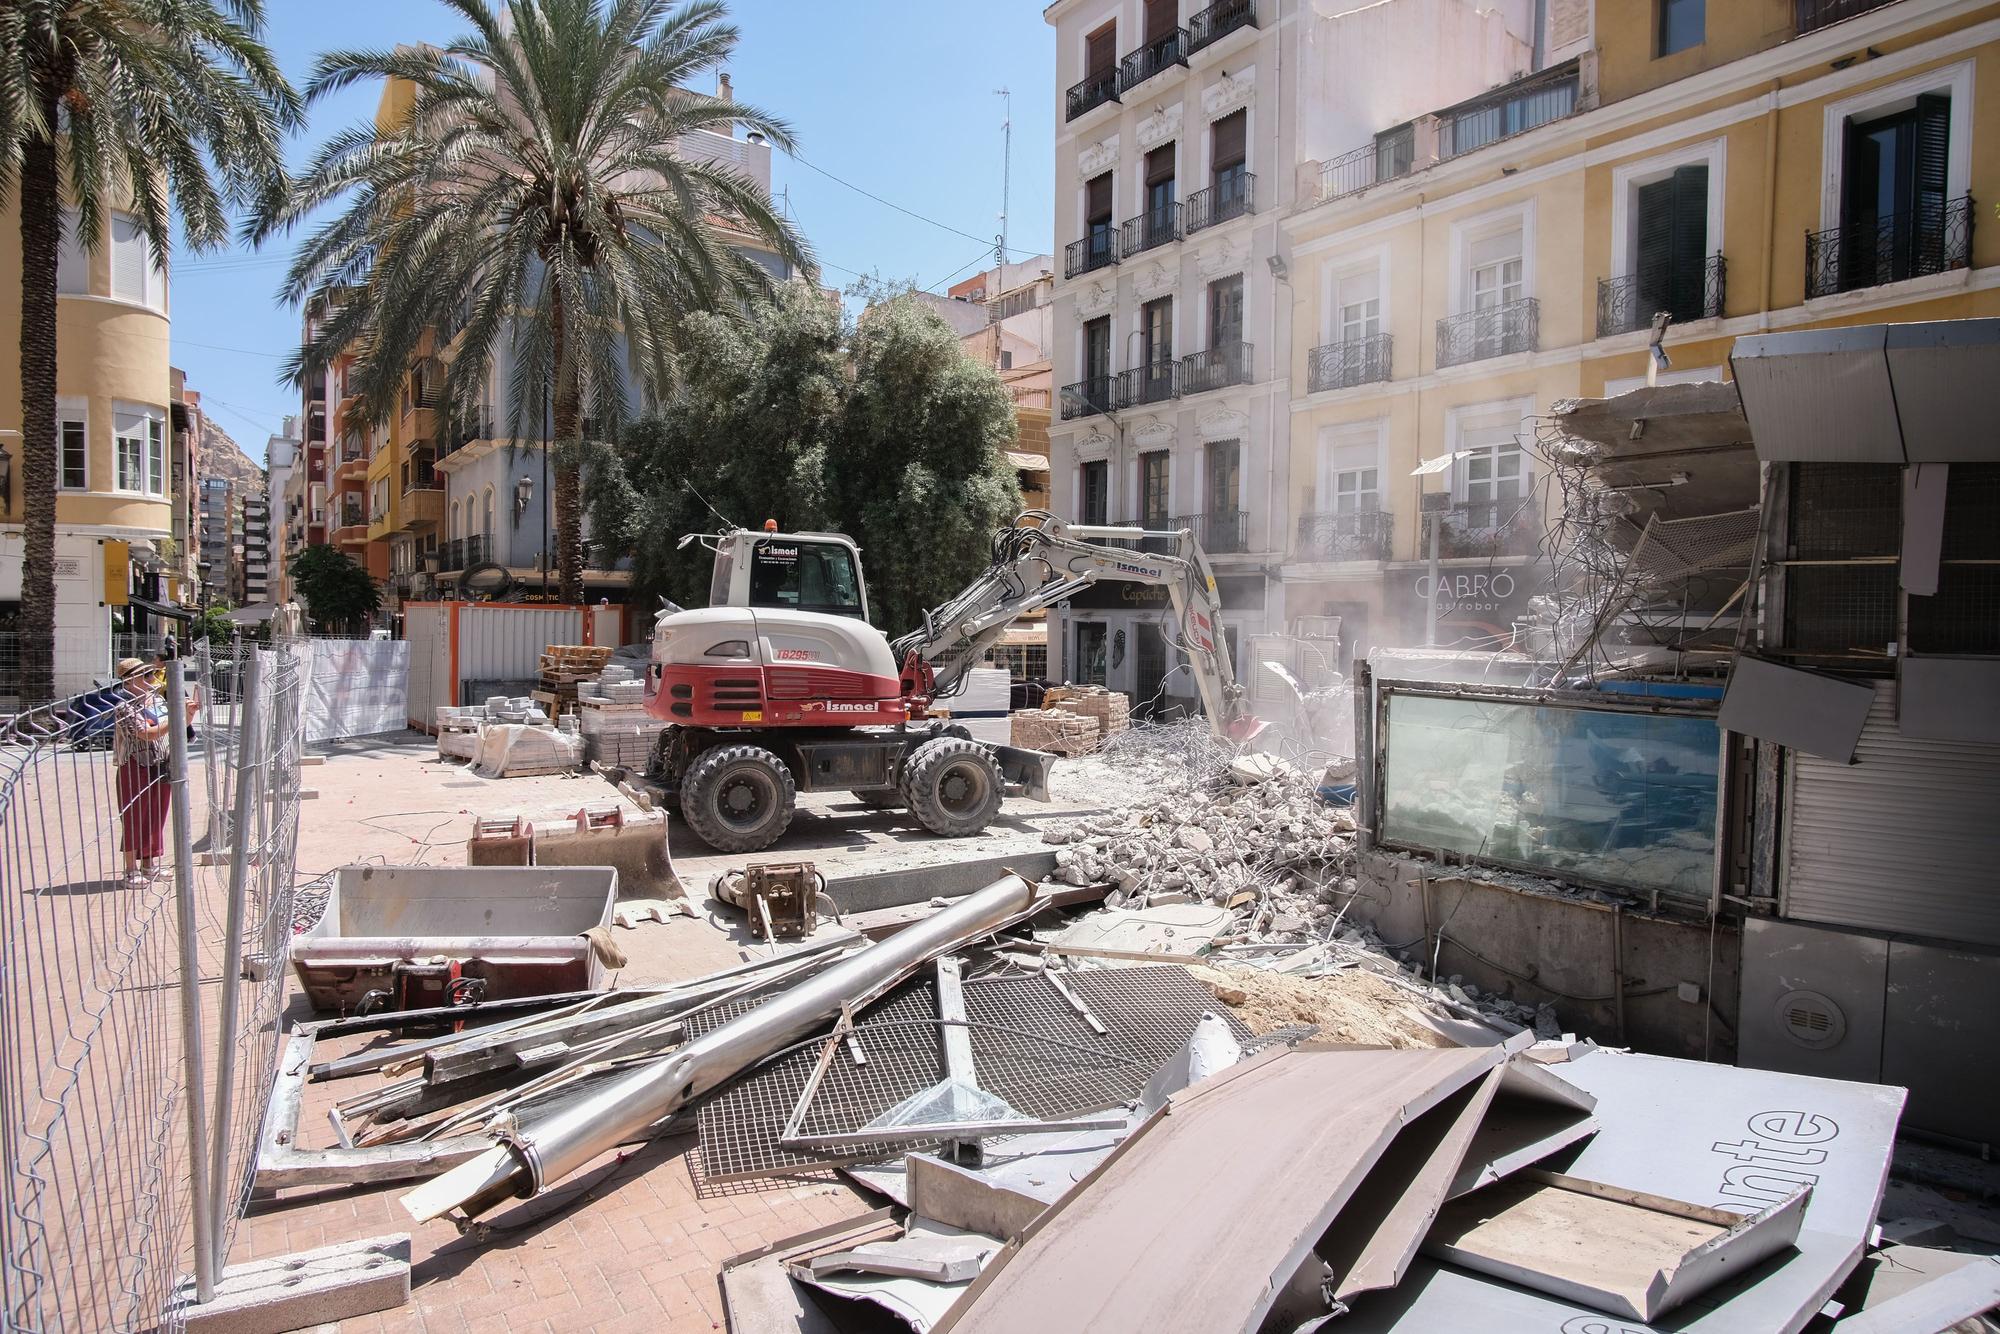 El acuario de la Plaza Nueva de Alicante reducido a escombros